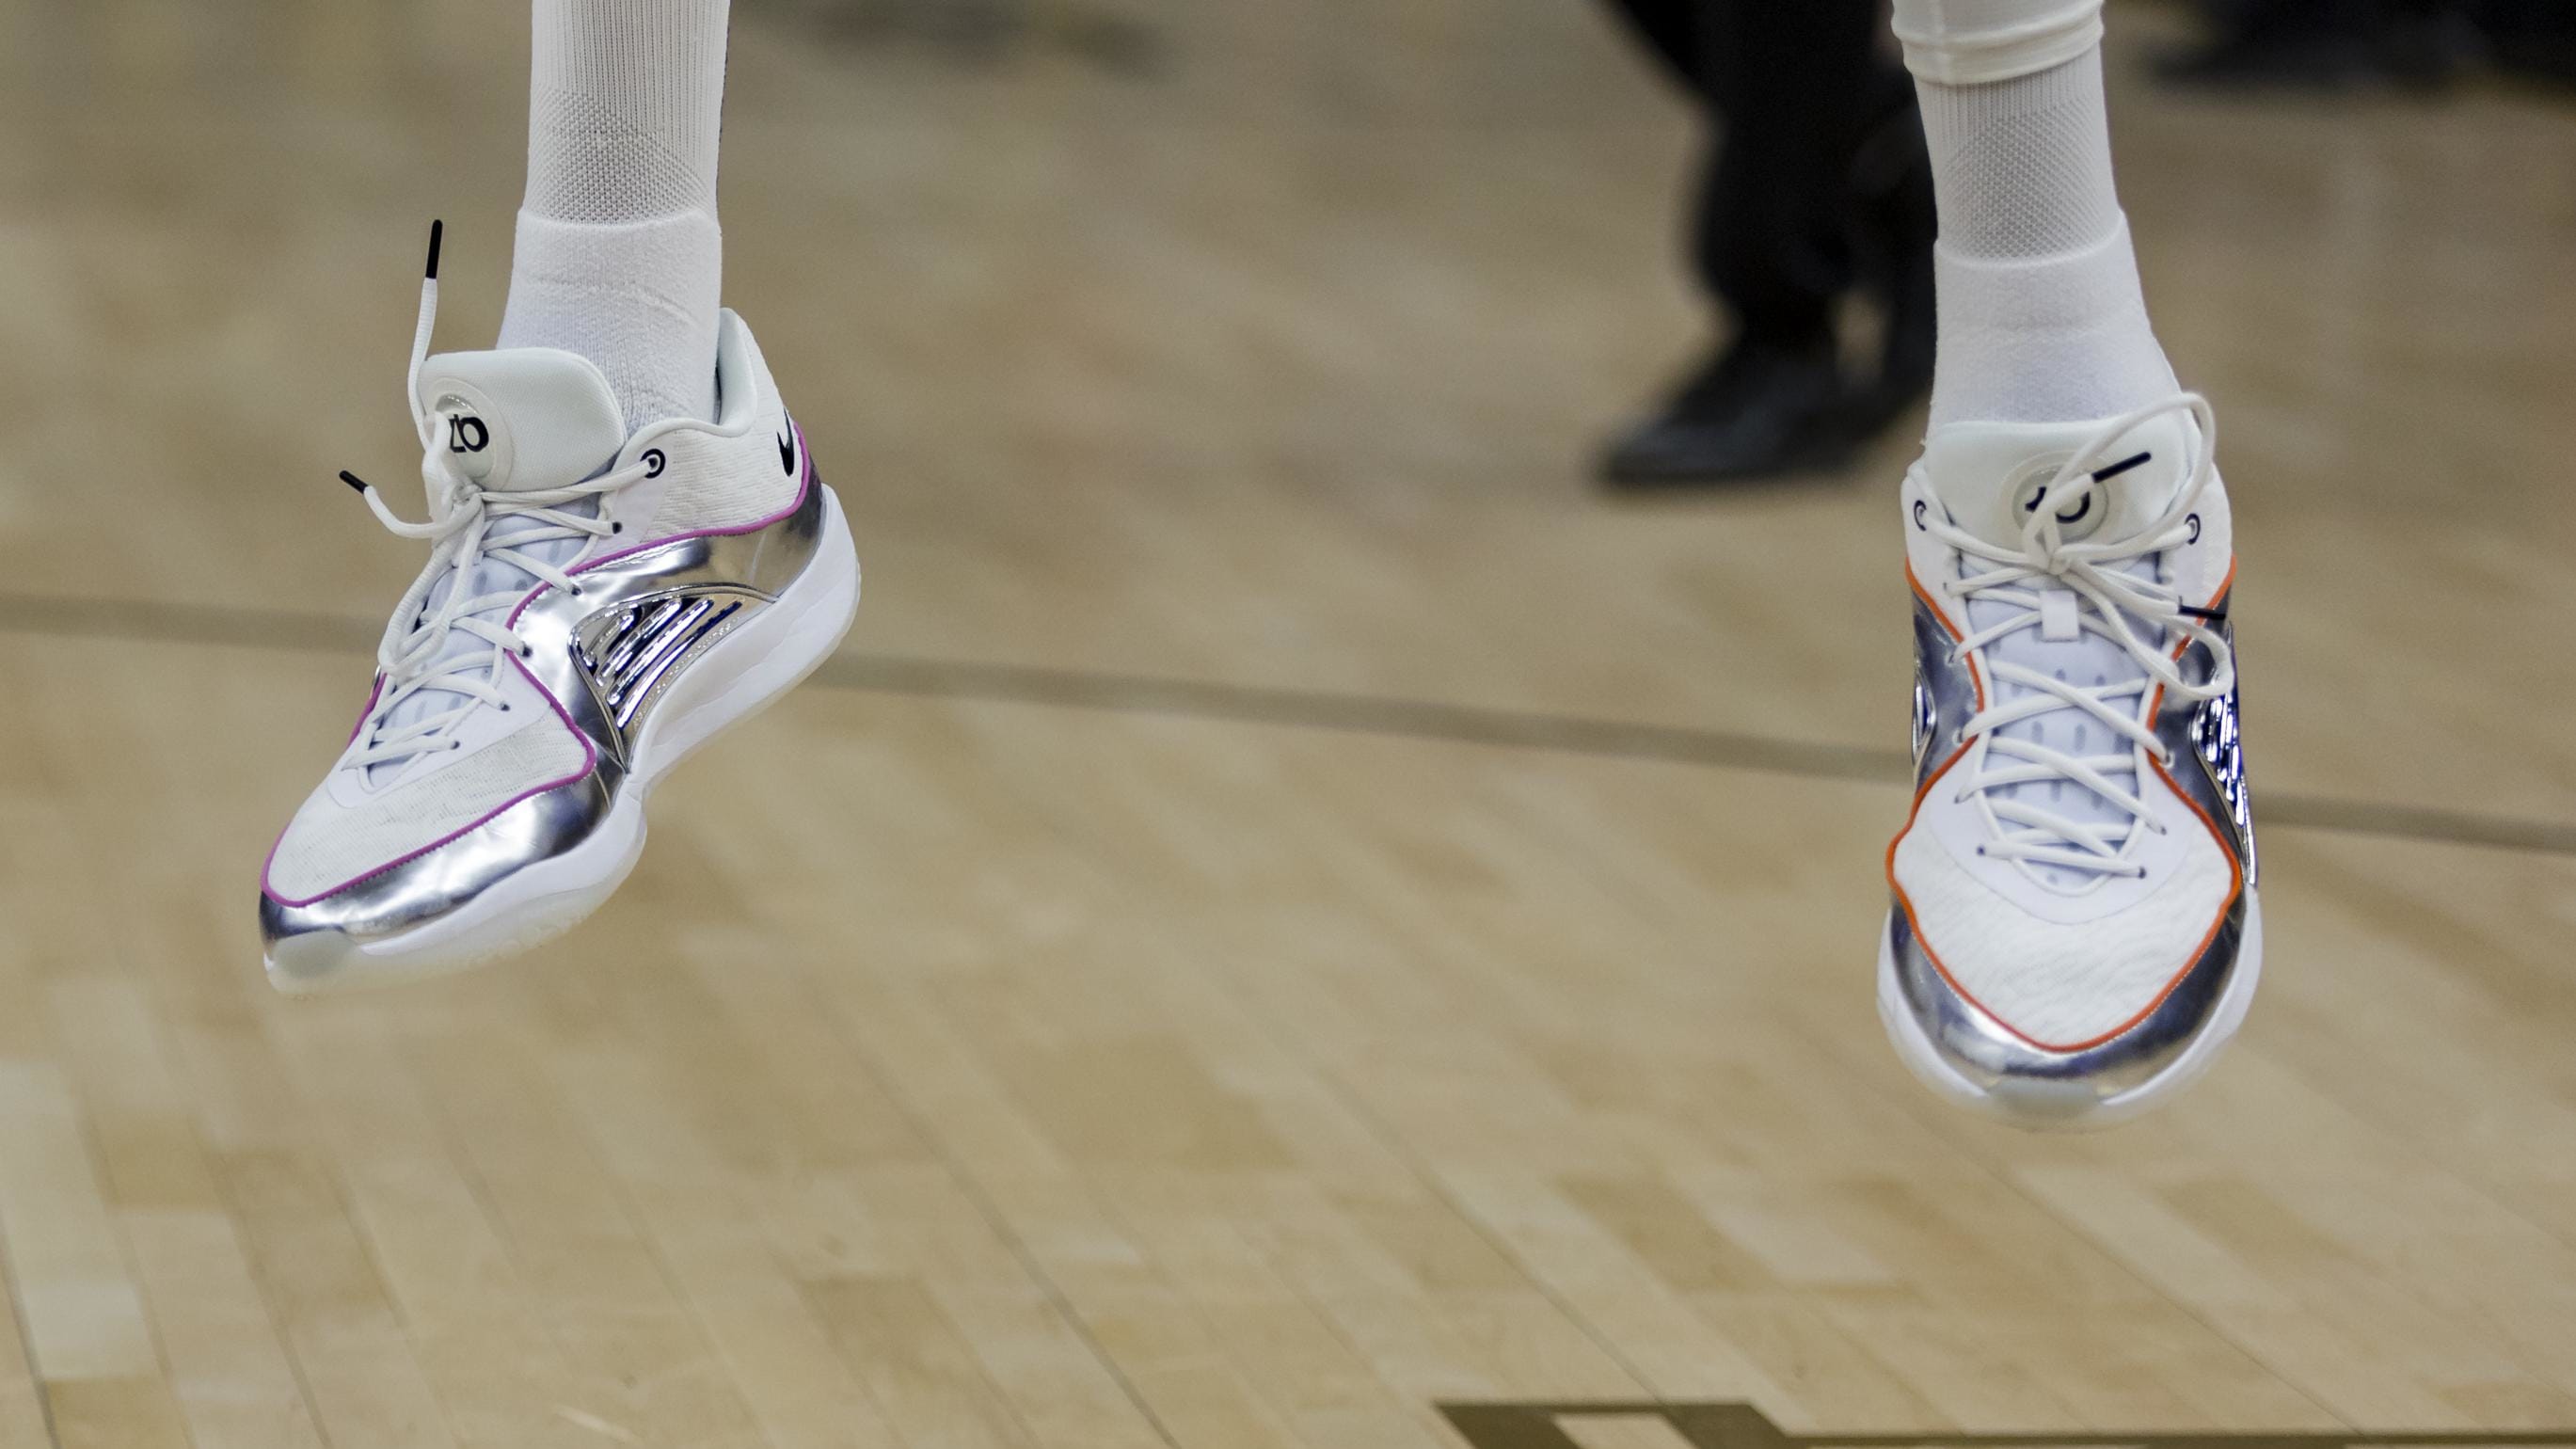 El delantero de los Phoenix Suns, Kevin Durant, lleva zapatillas Nike plateadas.